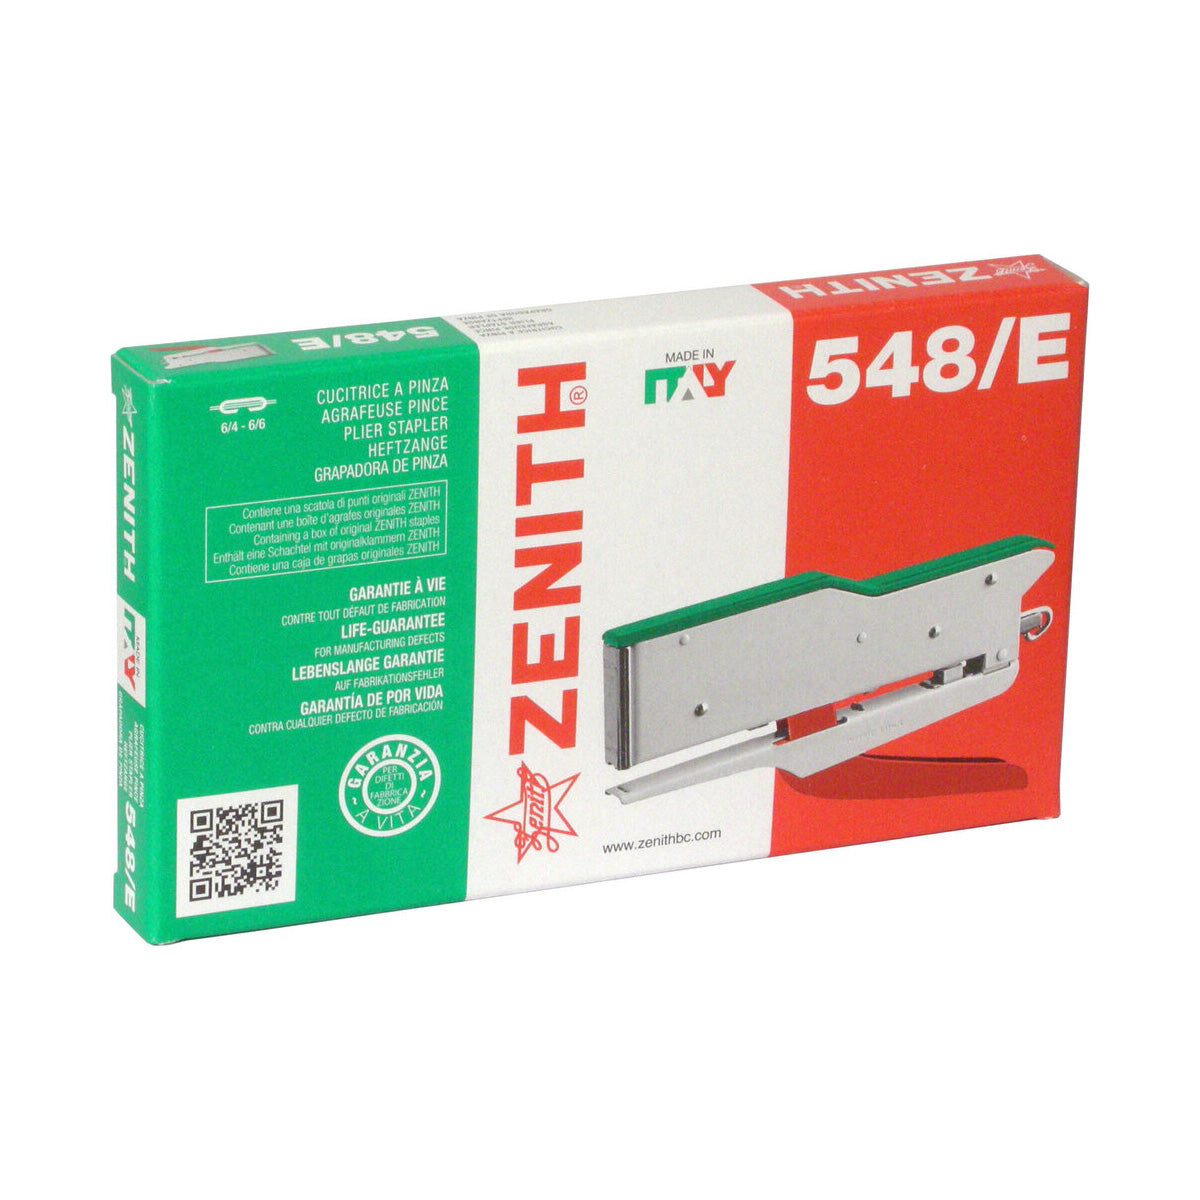 Zenith 548/E Tricolor Pliers Stapler box